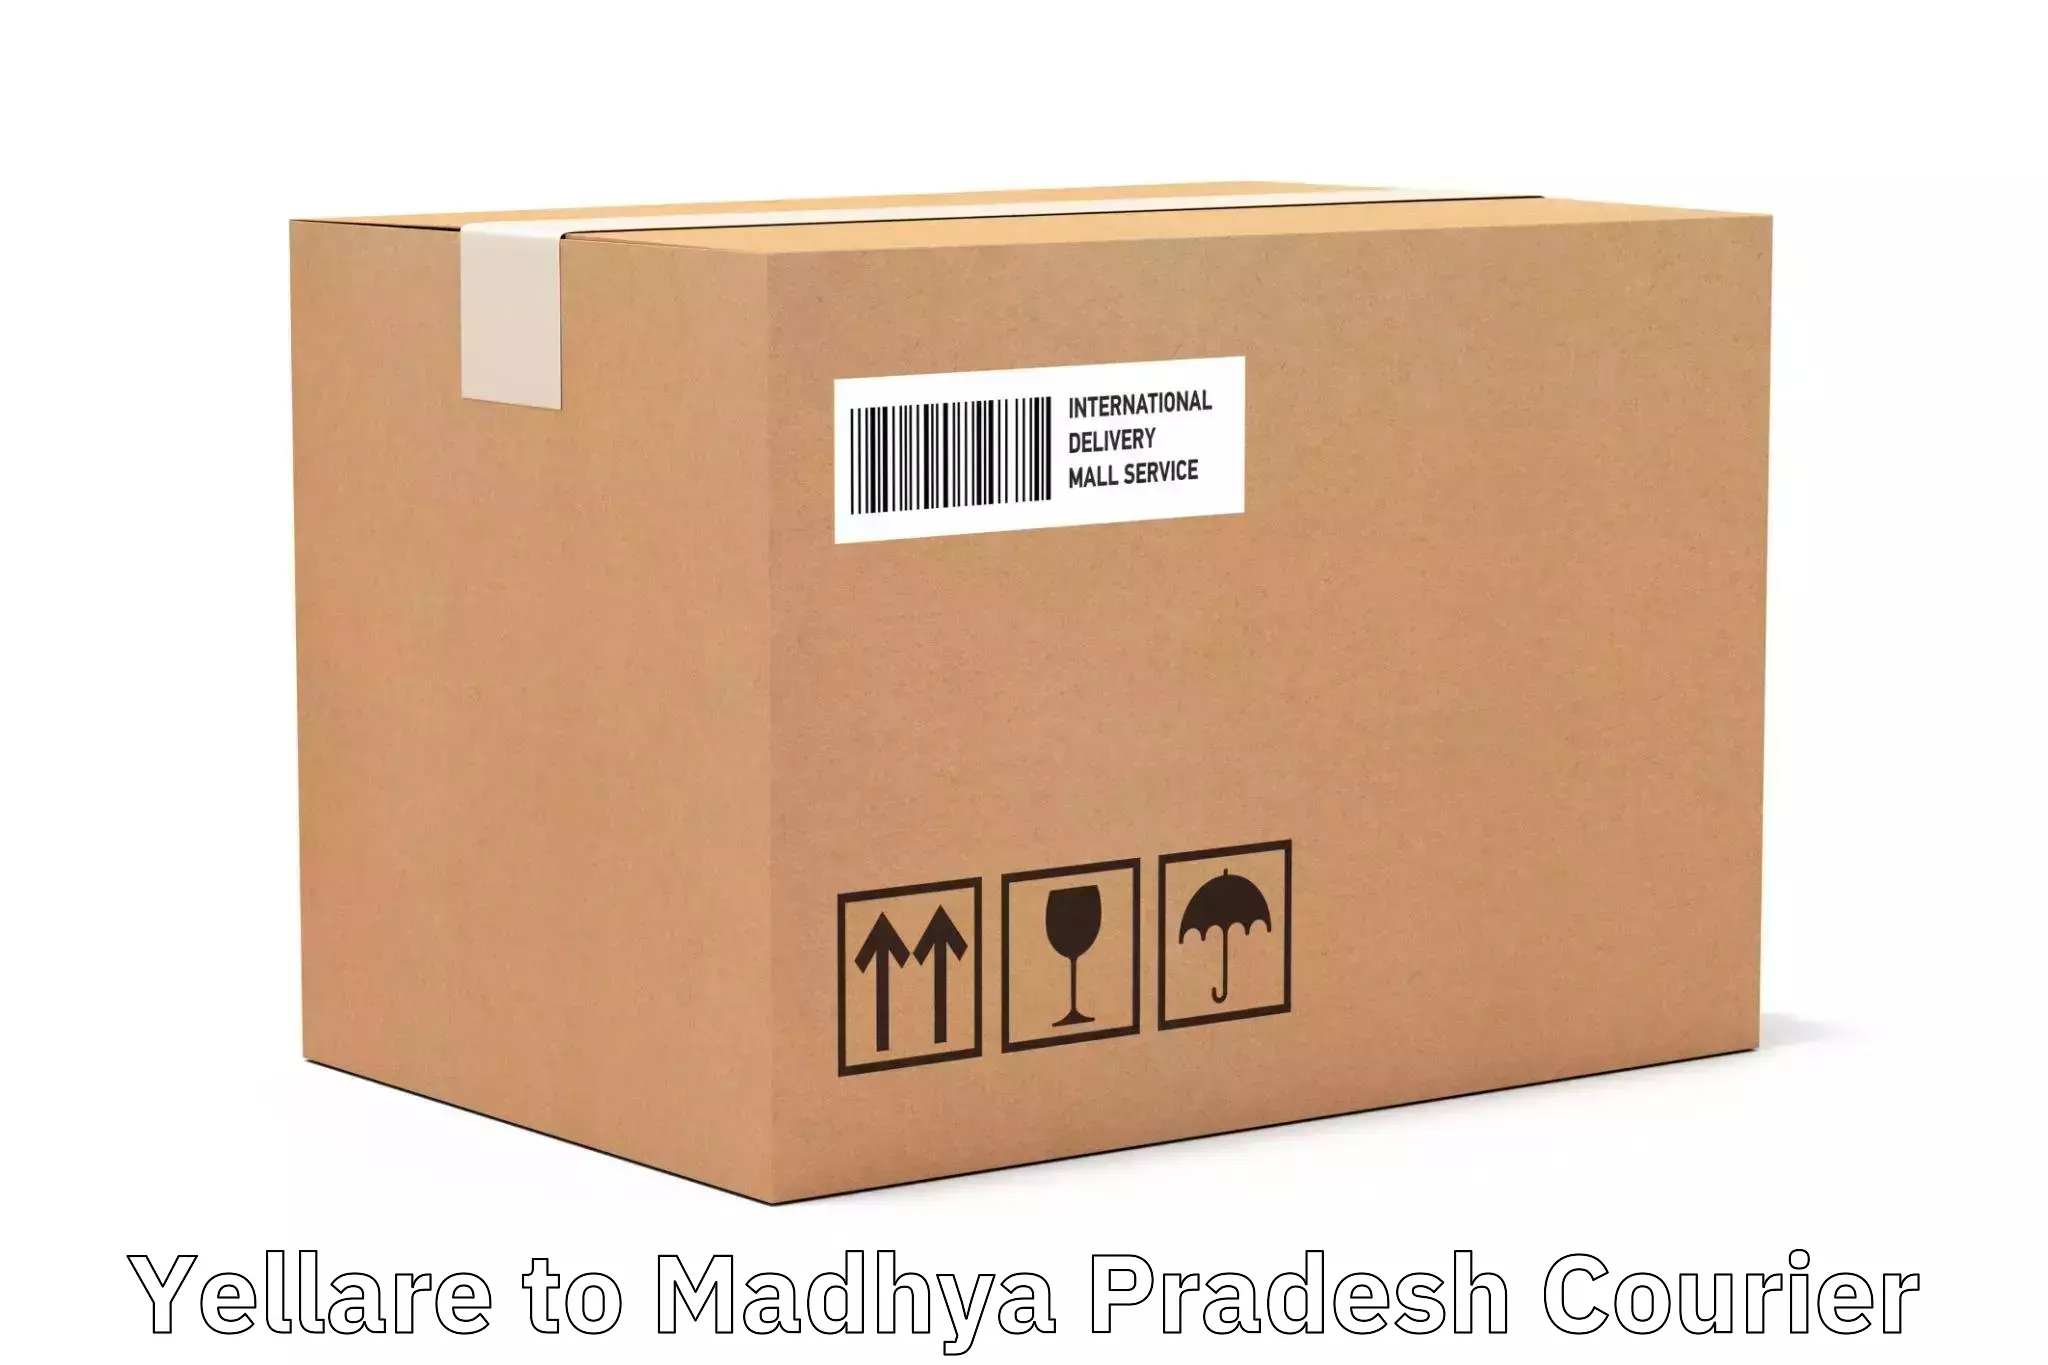 Courier membership in Yellare to Madhya Pradesh